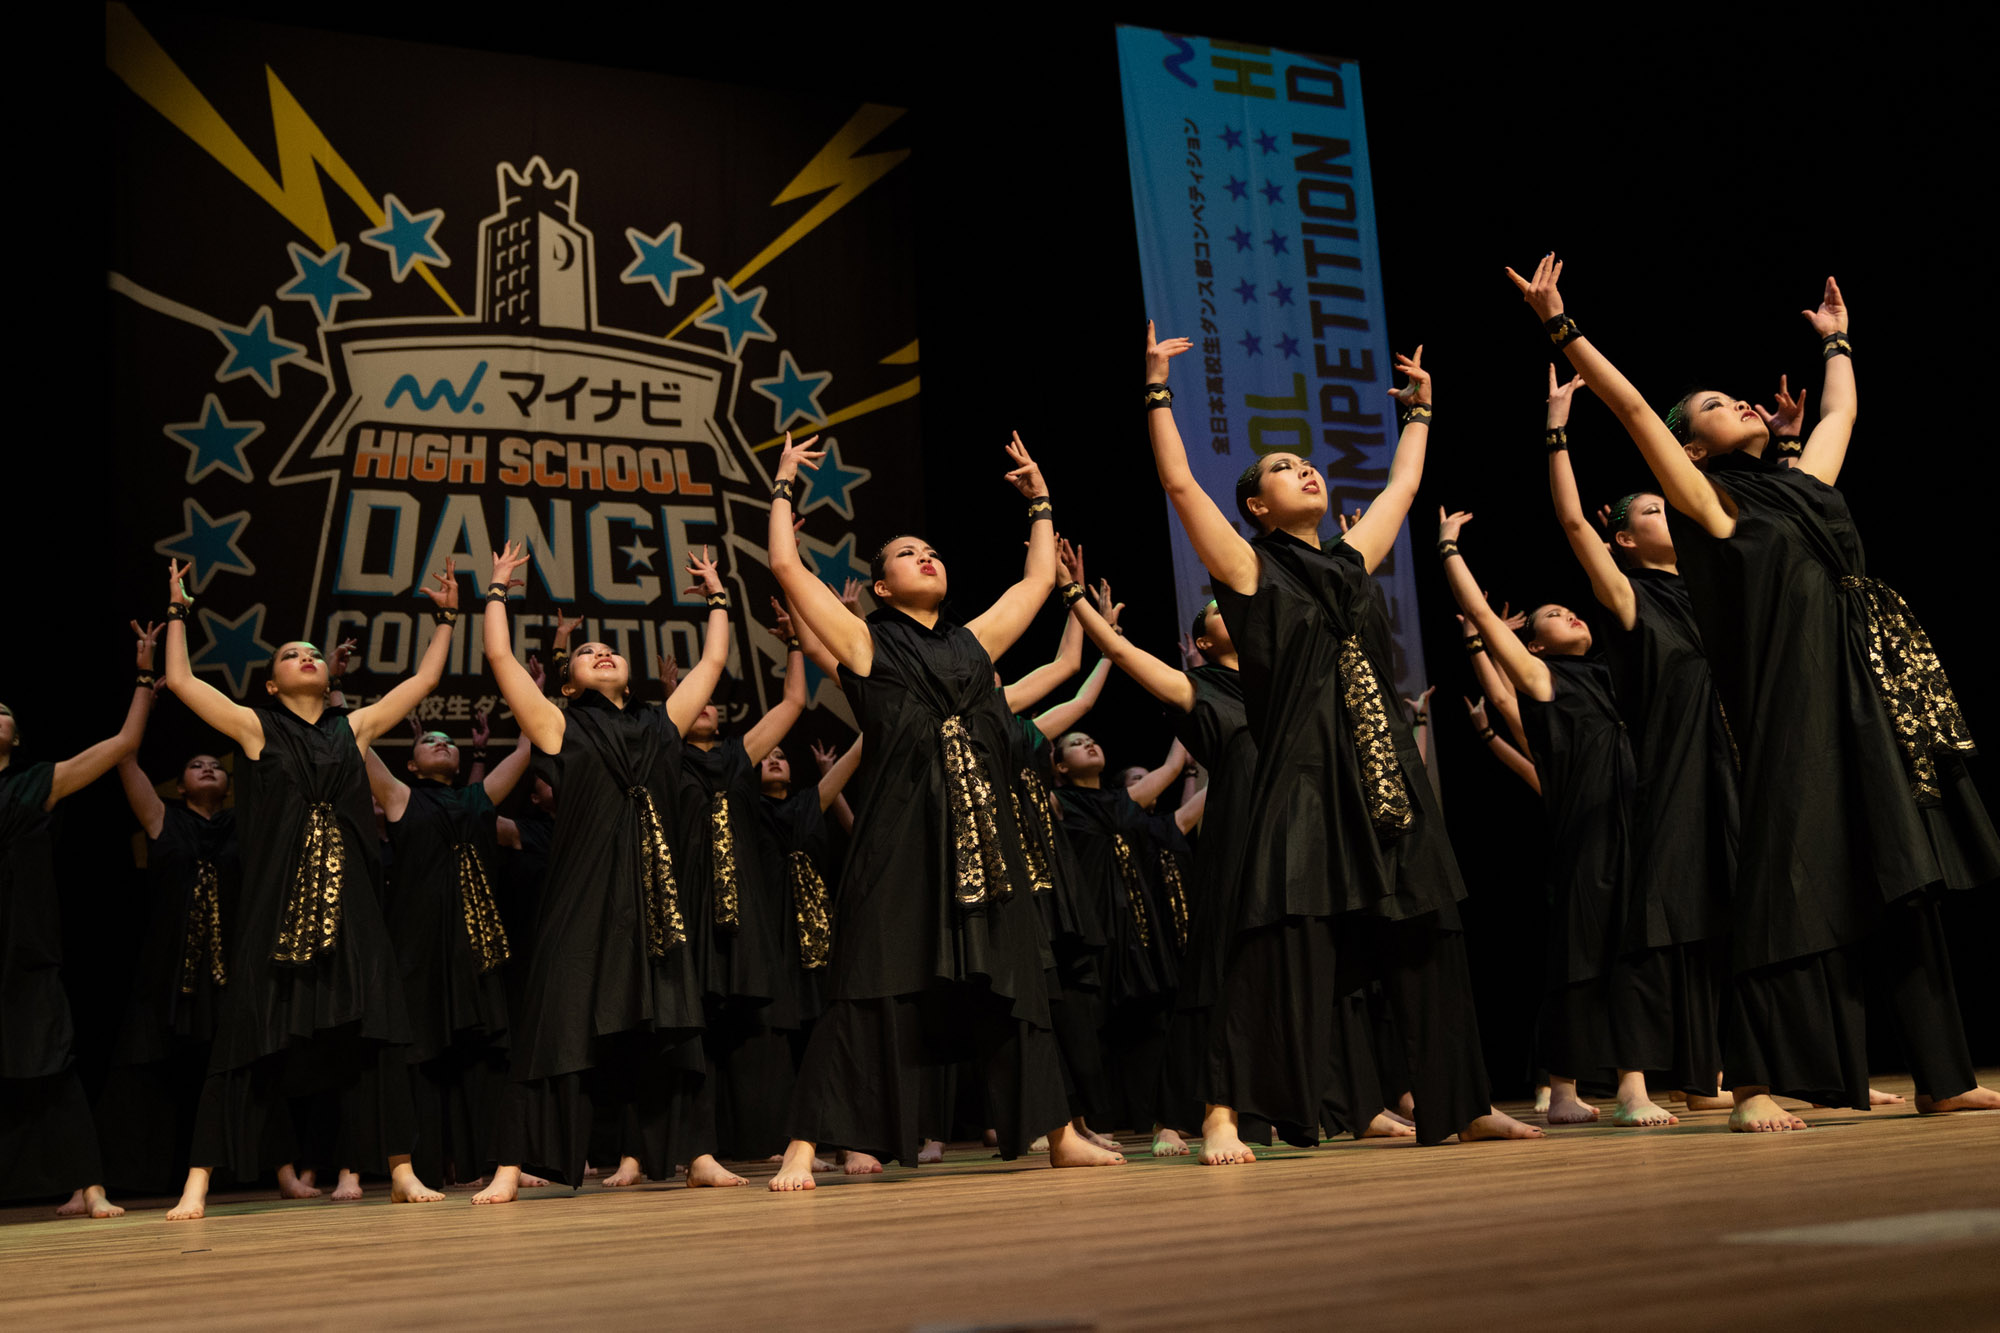 マイナビHIGH SCHOOL DANCE COMPETITION 2020 WEST VOL.1 結果